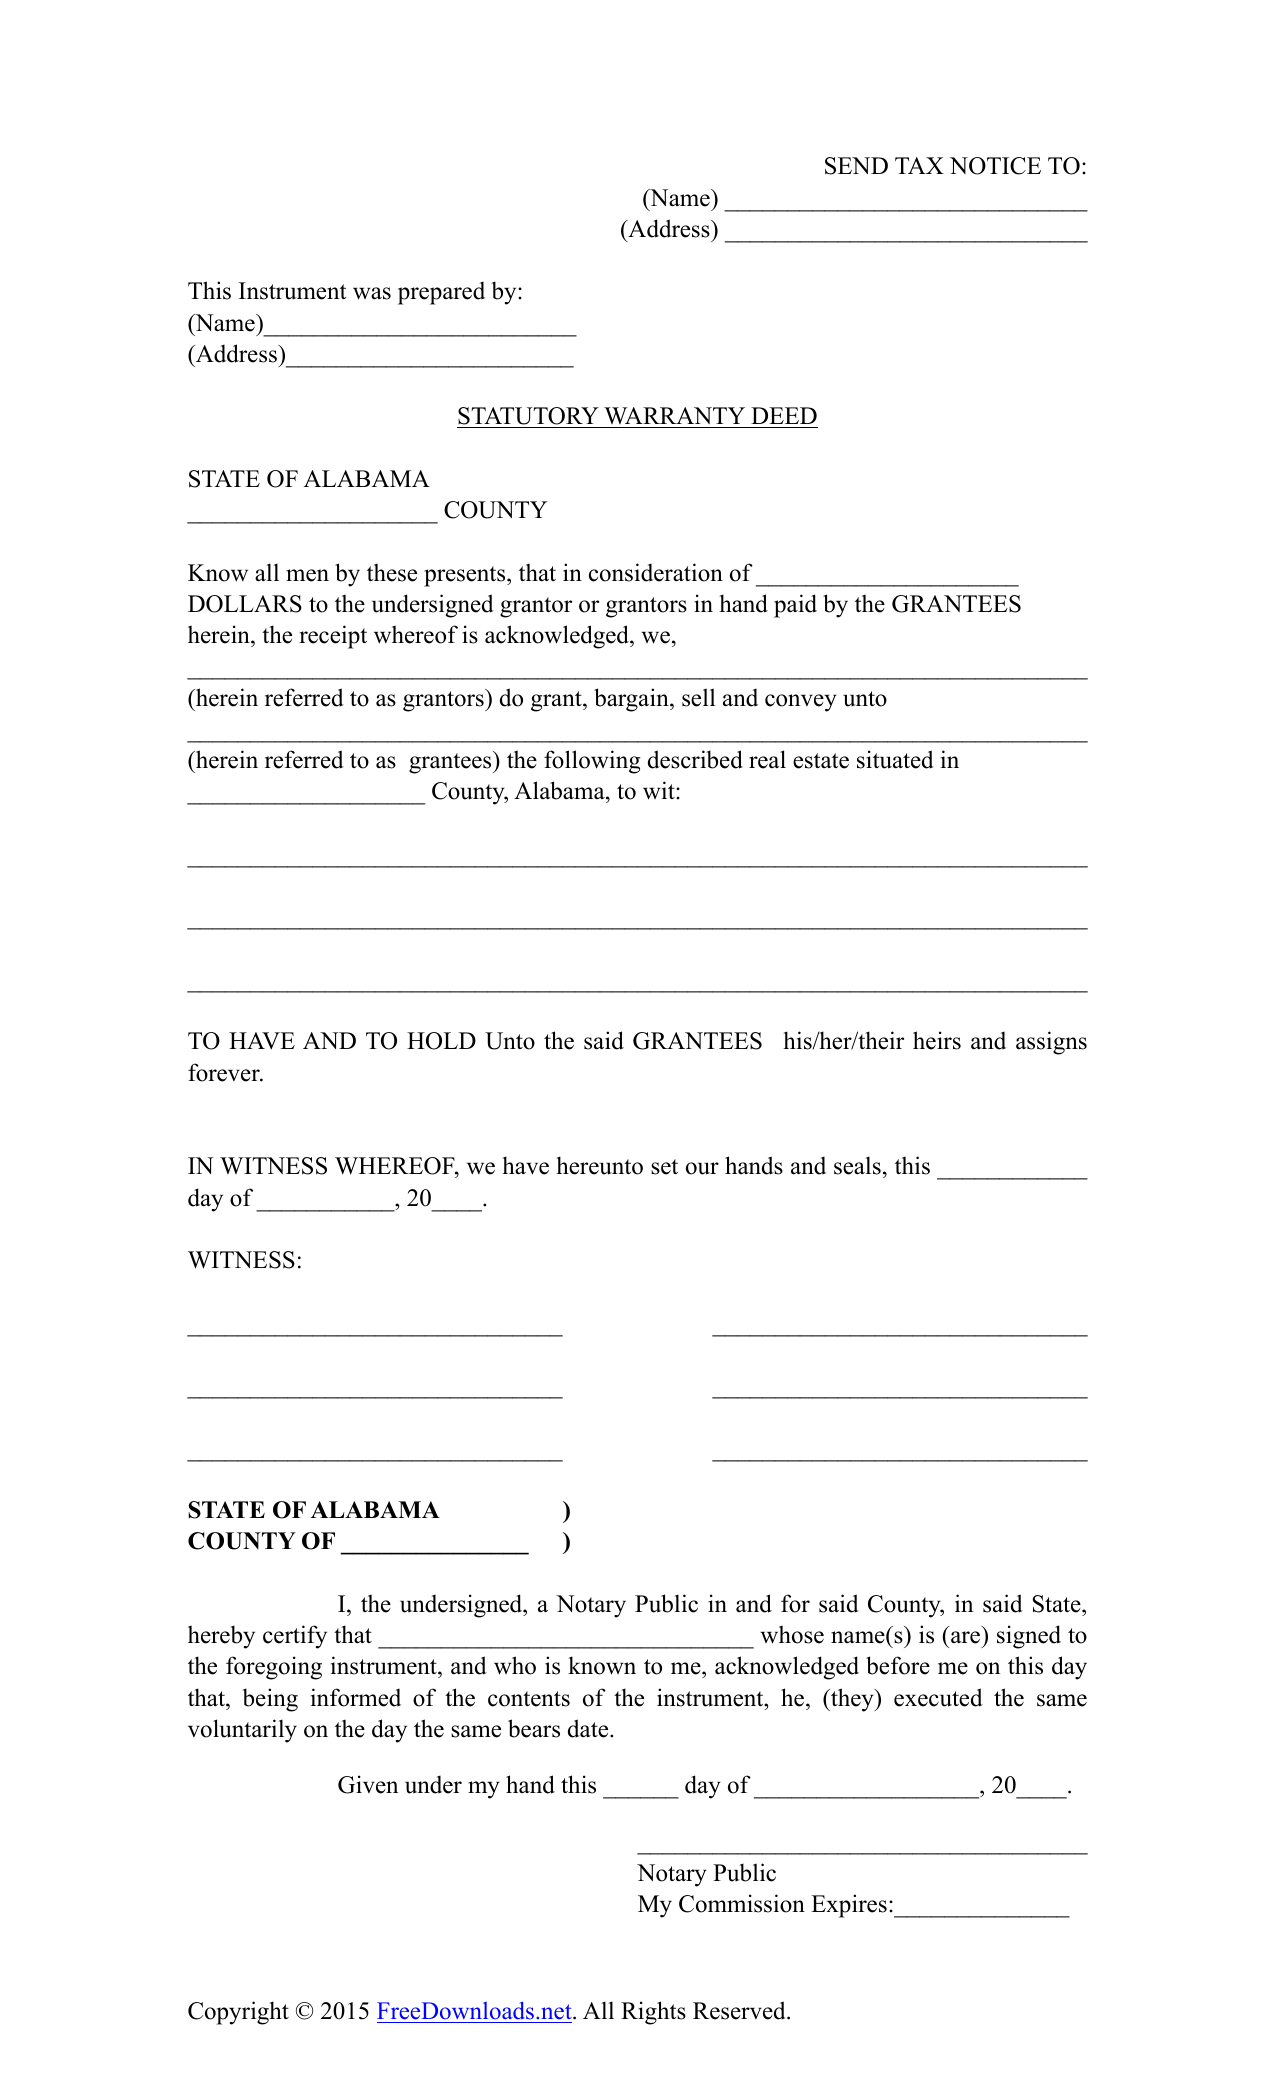 download-alabama-statutory-special-warranty-deed-form-pdf-rtf